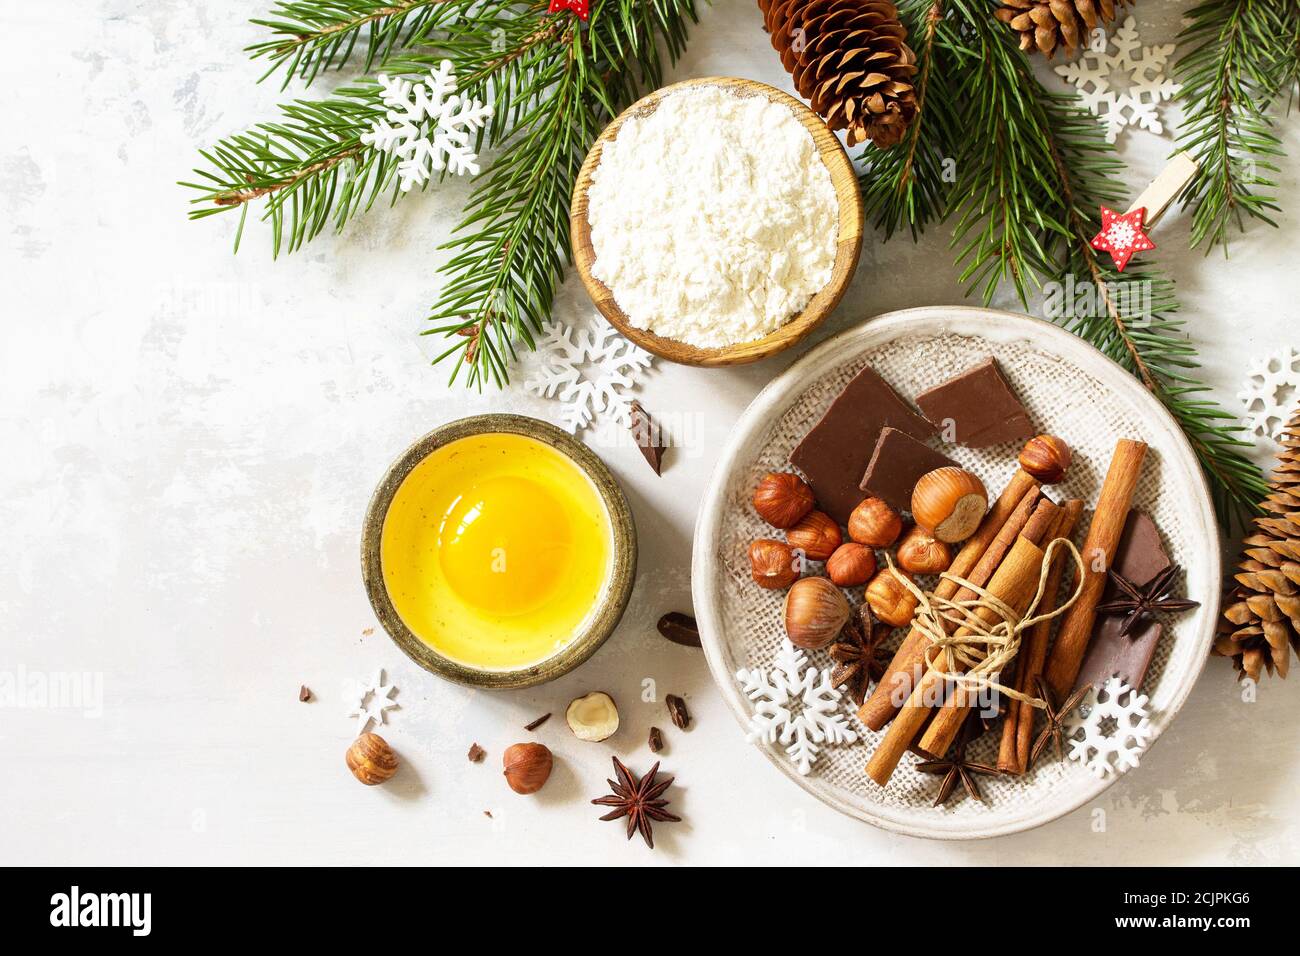 Cuisine de saison fond d'hiver. Ingrédients pour la cuisson de Noël - chocolat, épices, noix, farine et œufs sur fond de pierre. Plan d'étapage avec vue de dessus Banque D'Images